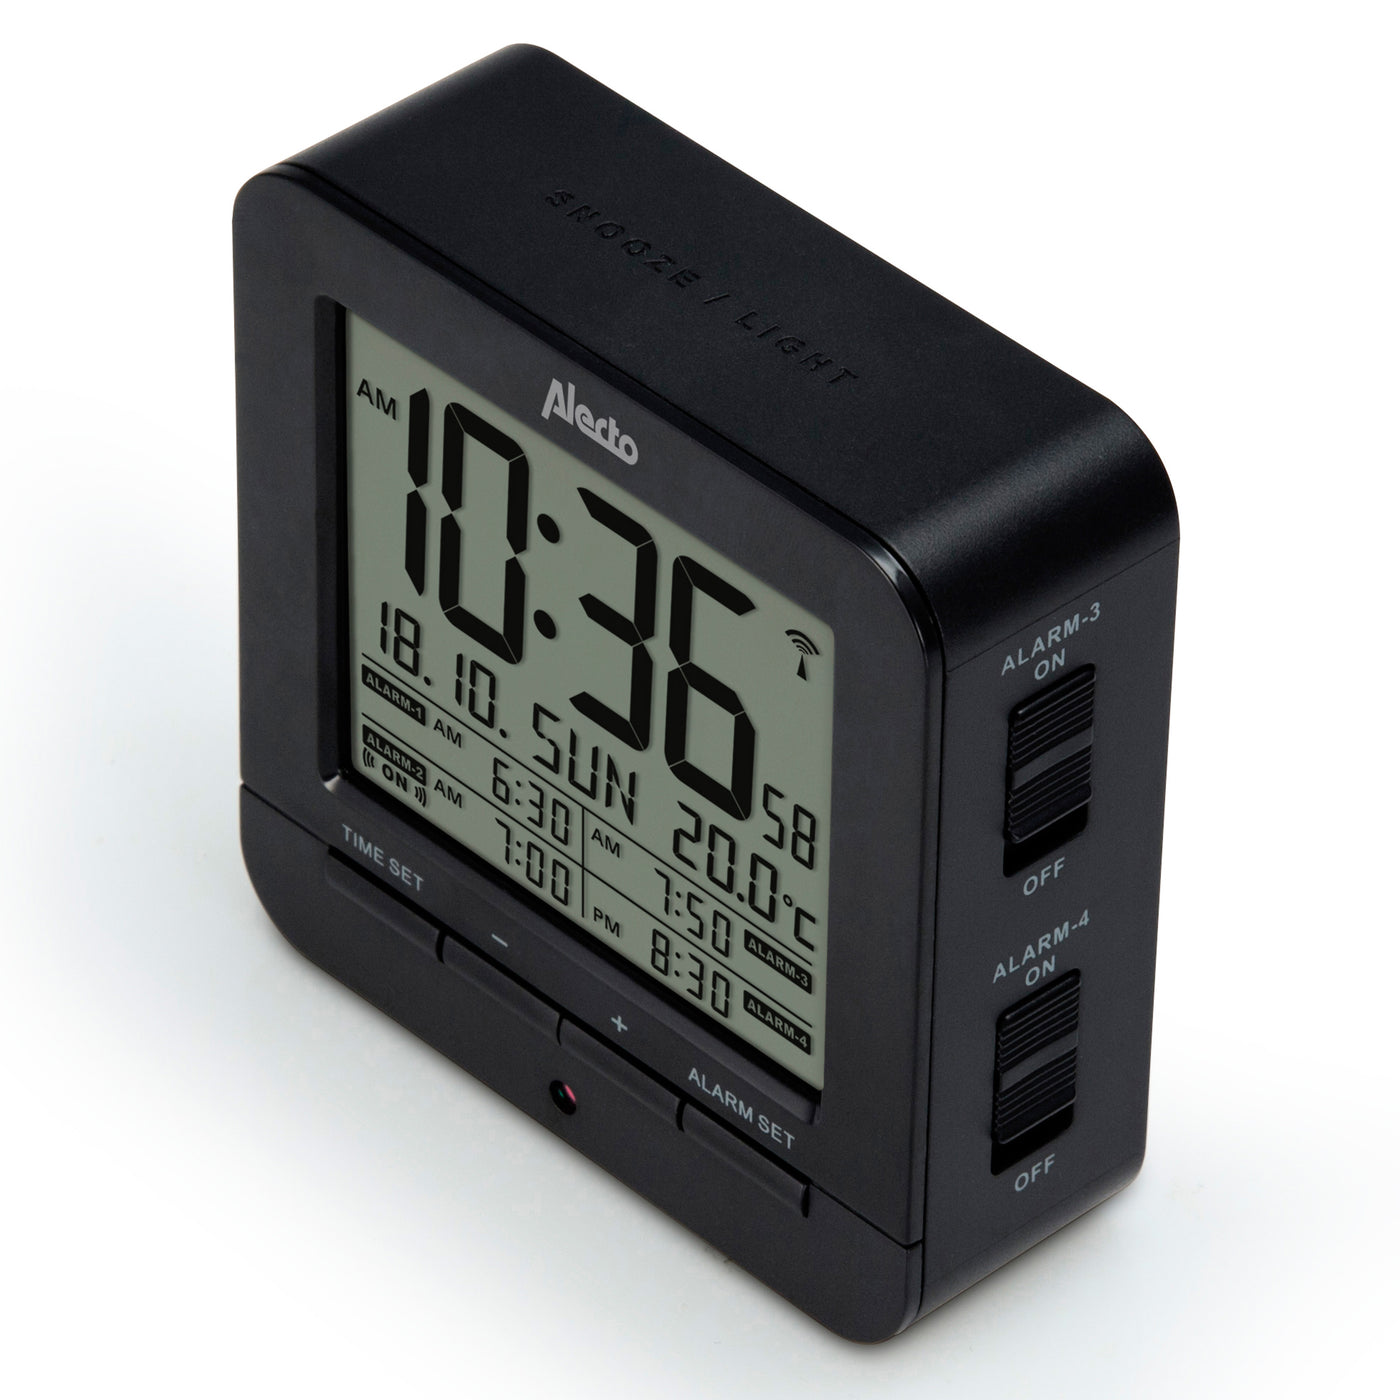 Alecto AK-20 - Digitale wekker met thermometer, zwart